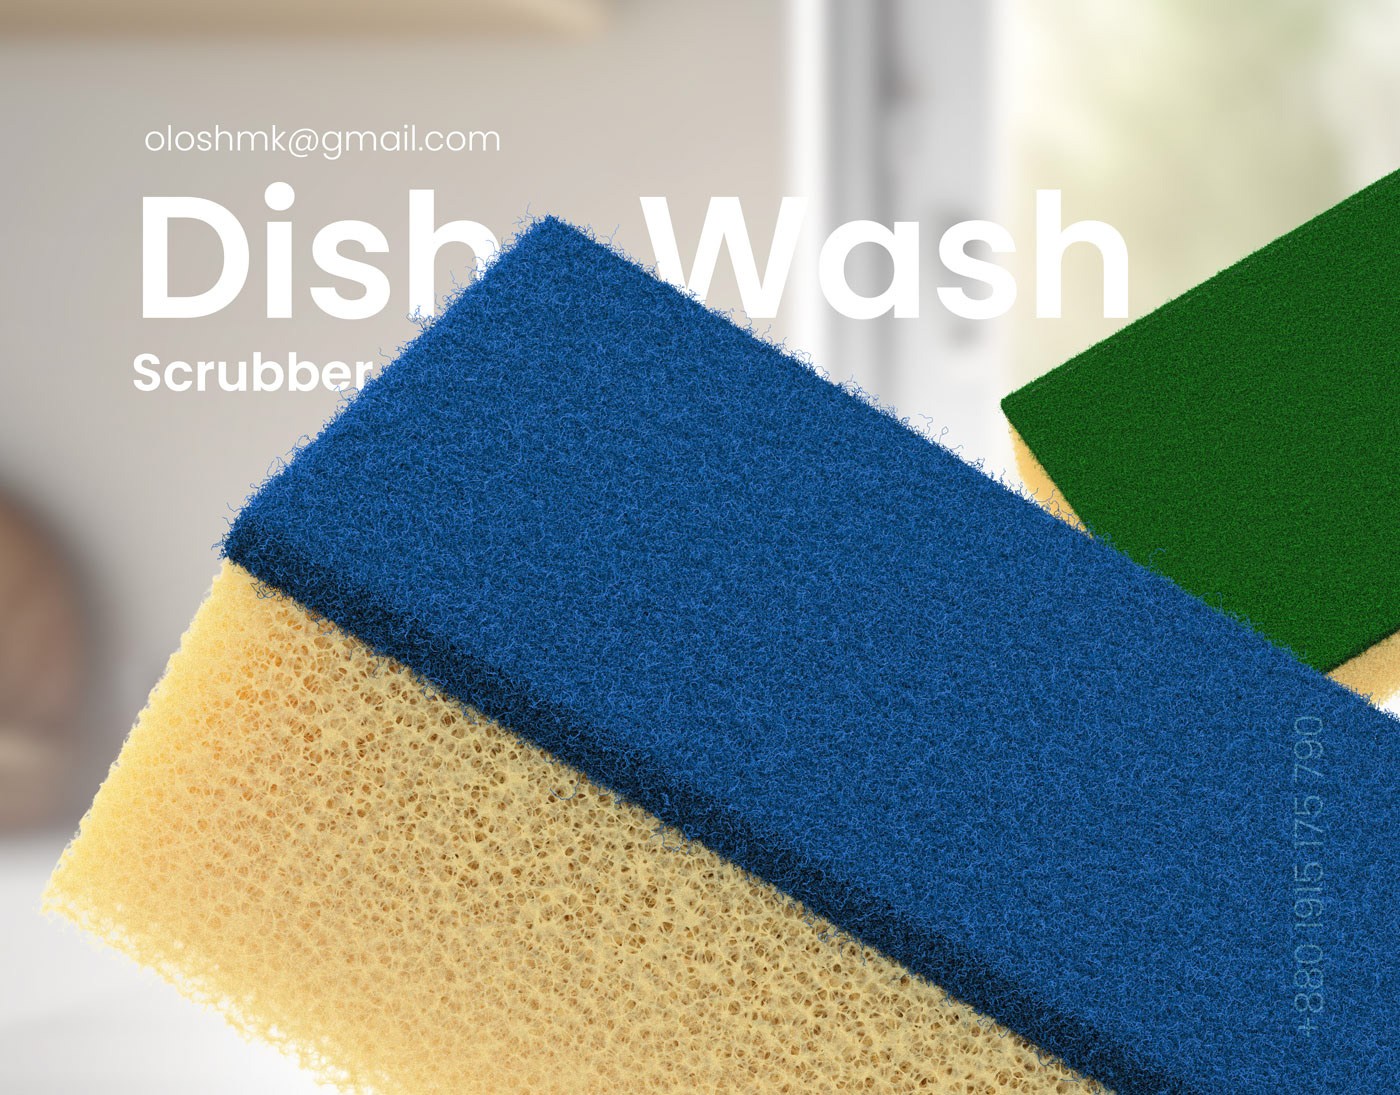 Scrubber cleaning dishwasher kitchen dishwashing clean dishes Dishes Design Scrubbers scrubbing